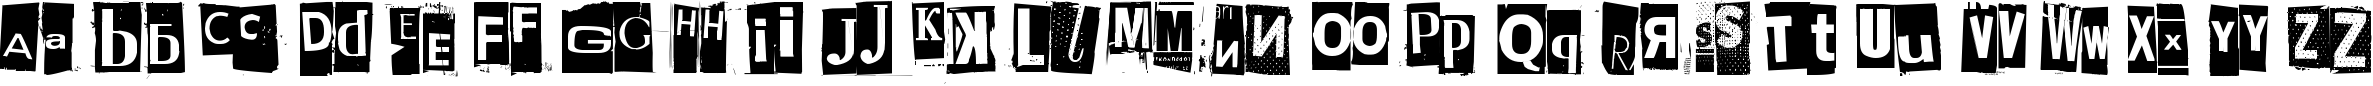 Пример написания английского алфавита шрифтом Phorssa